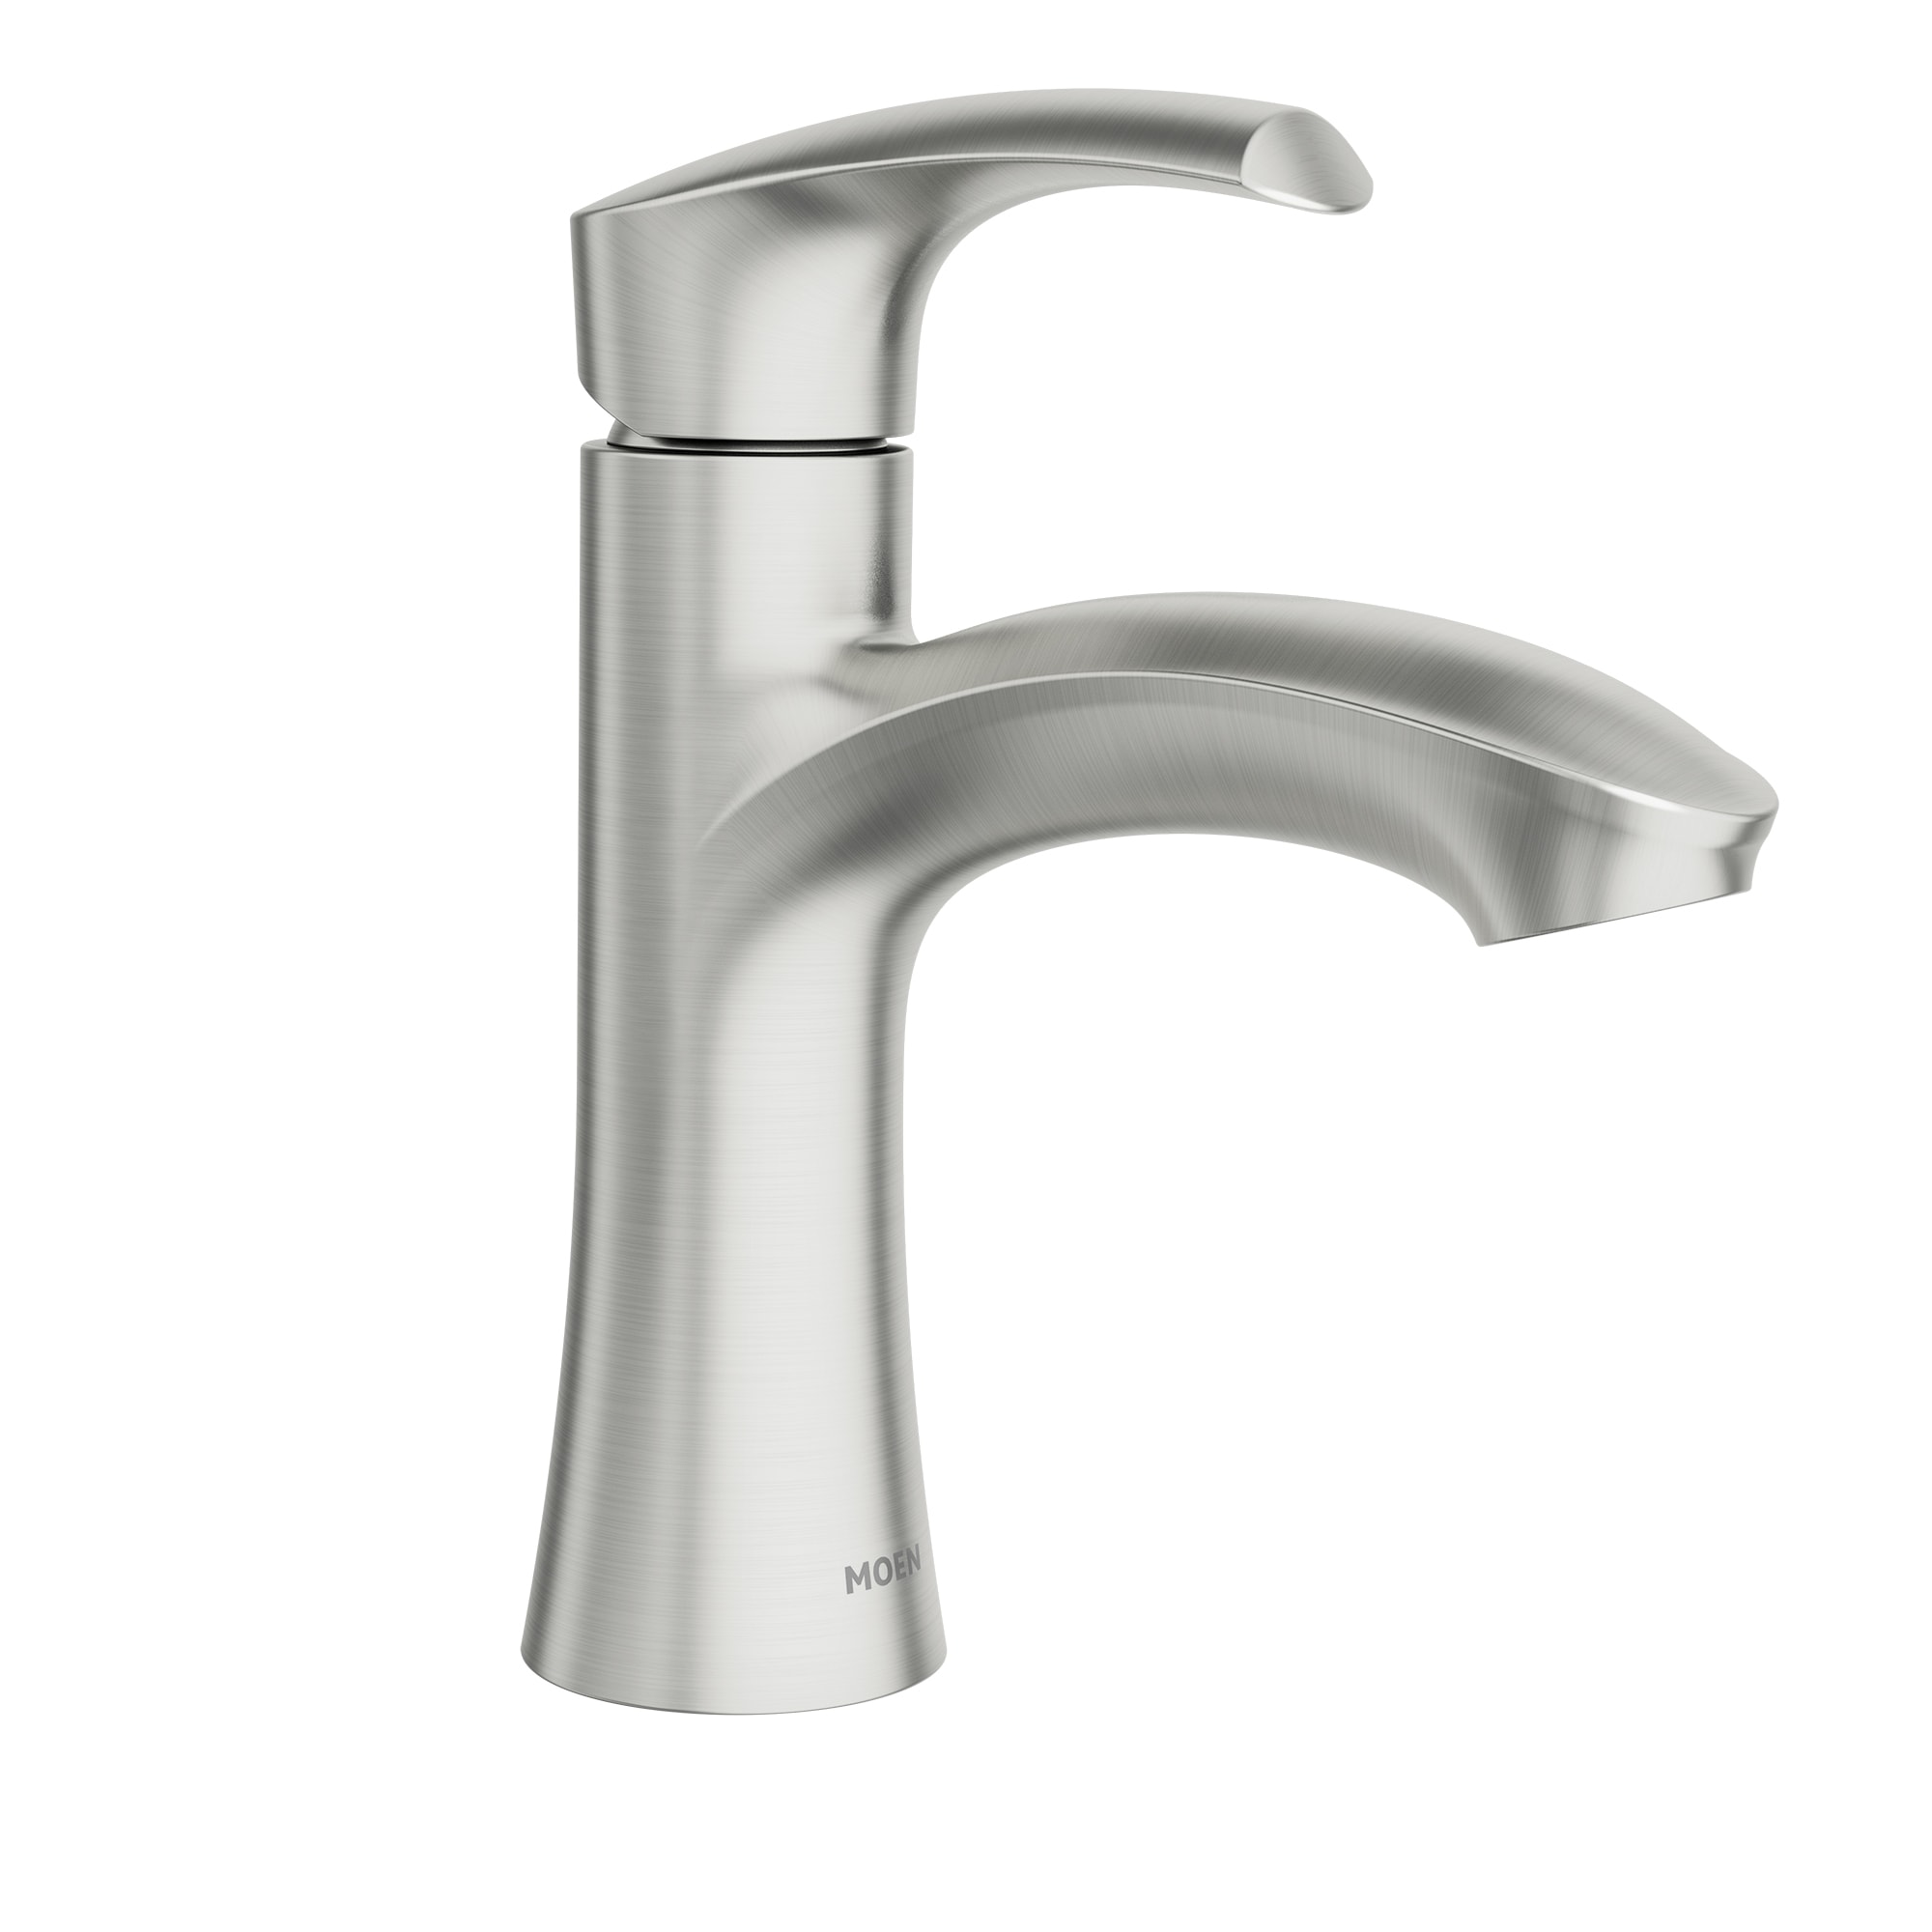 Moen Halle Spot Resist Brushed Nickel 1-Handle Single Hole WaterSense Bathroom Sink Faucet with Drain | 84970SRN